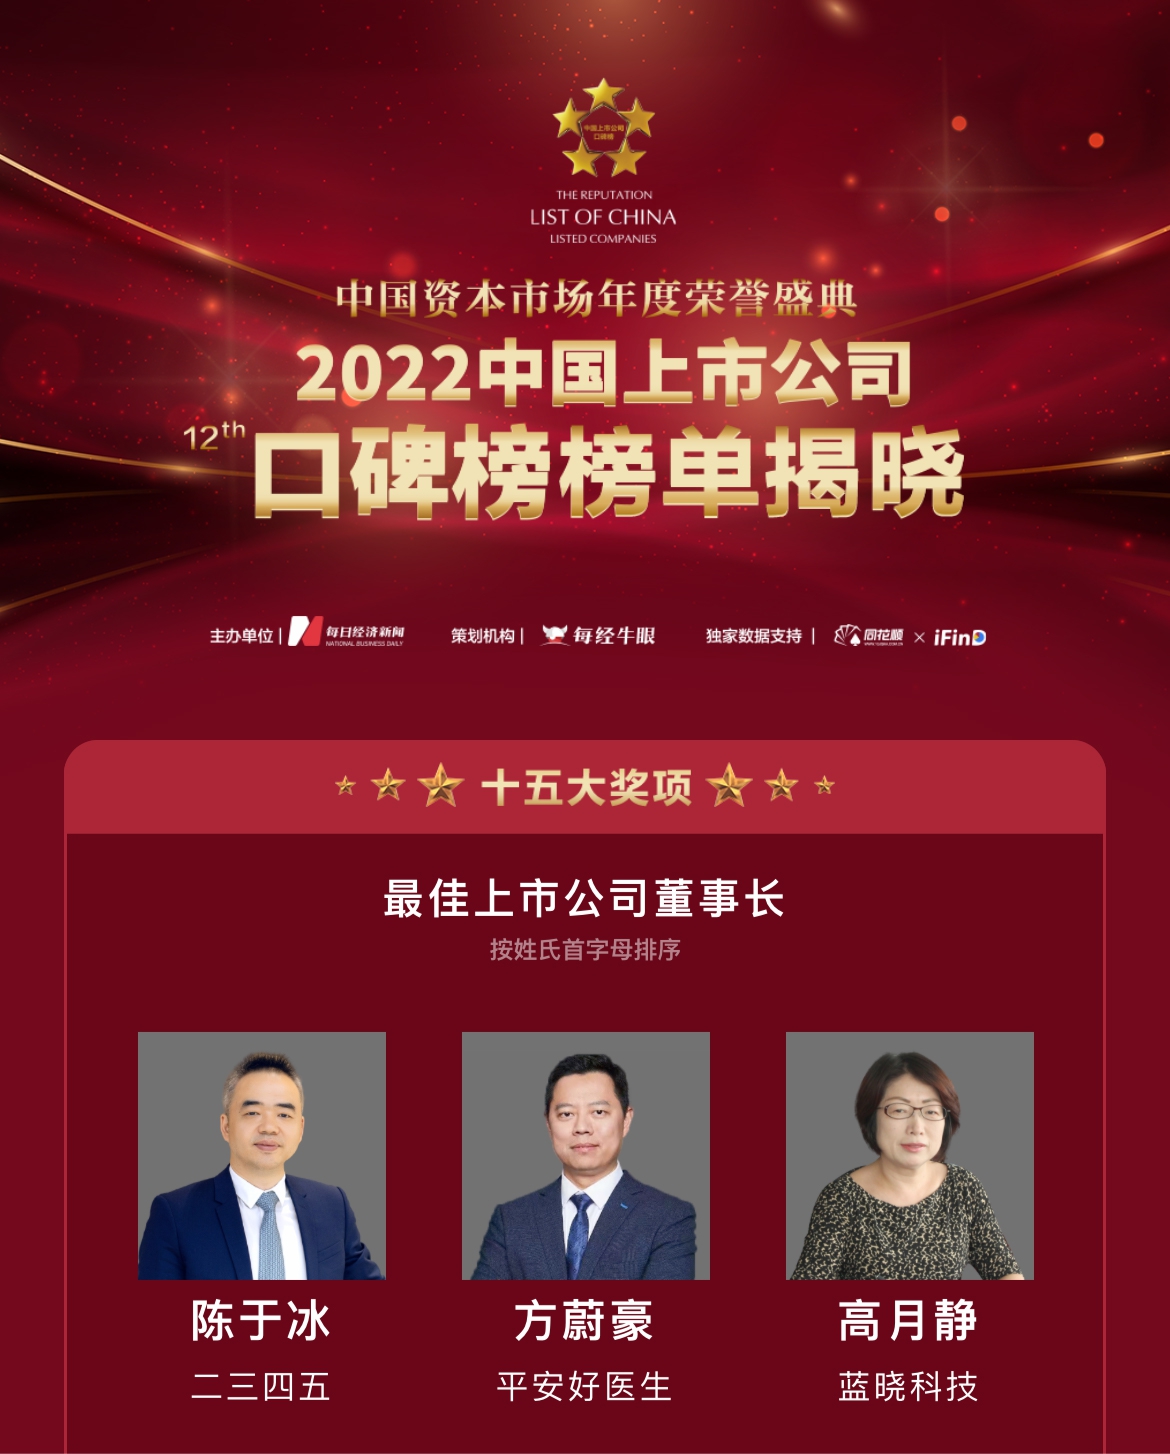 非凡彩票app荣膺“第十二届中国上市公司口碑榜”两项大奖